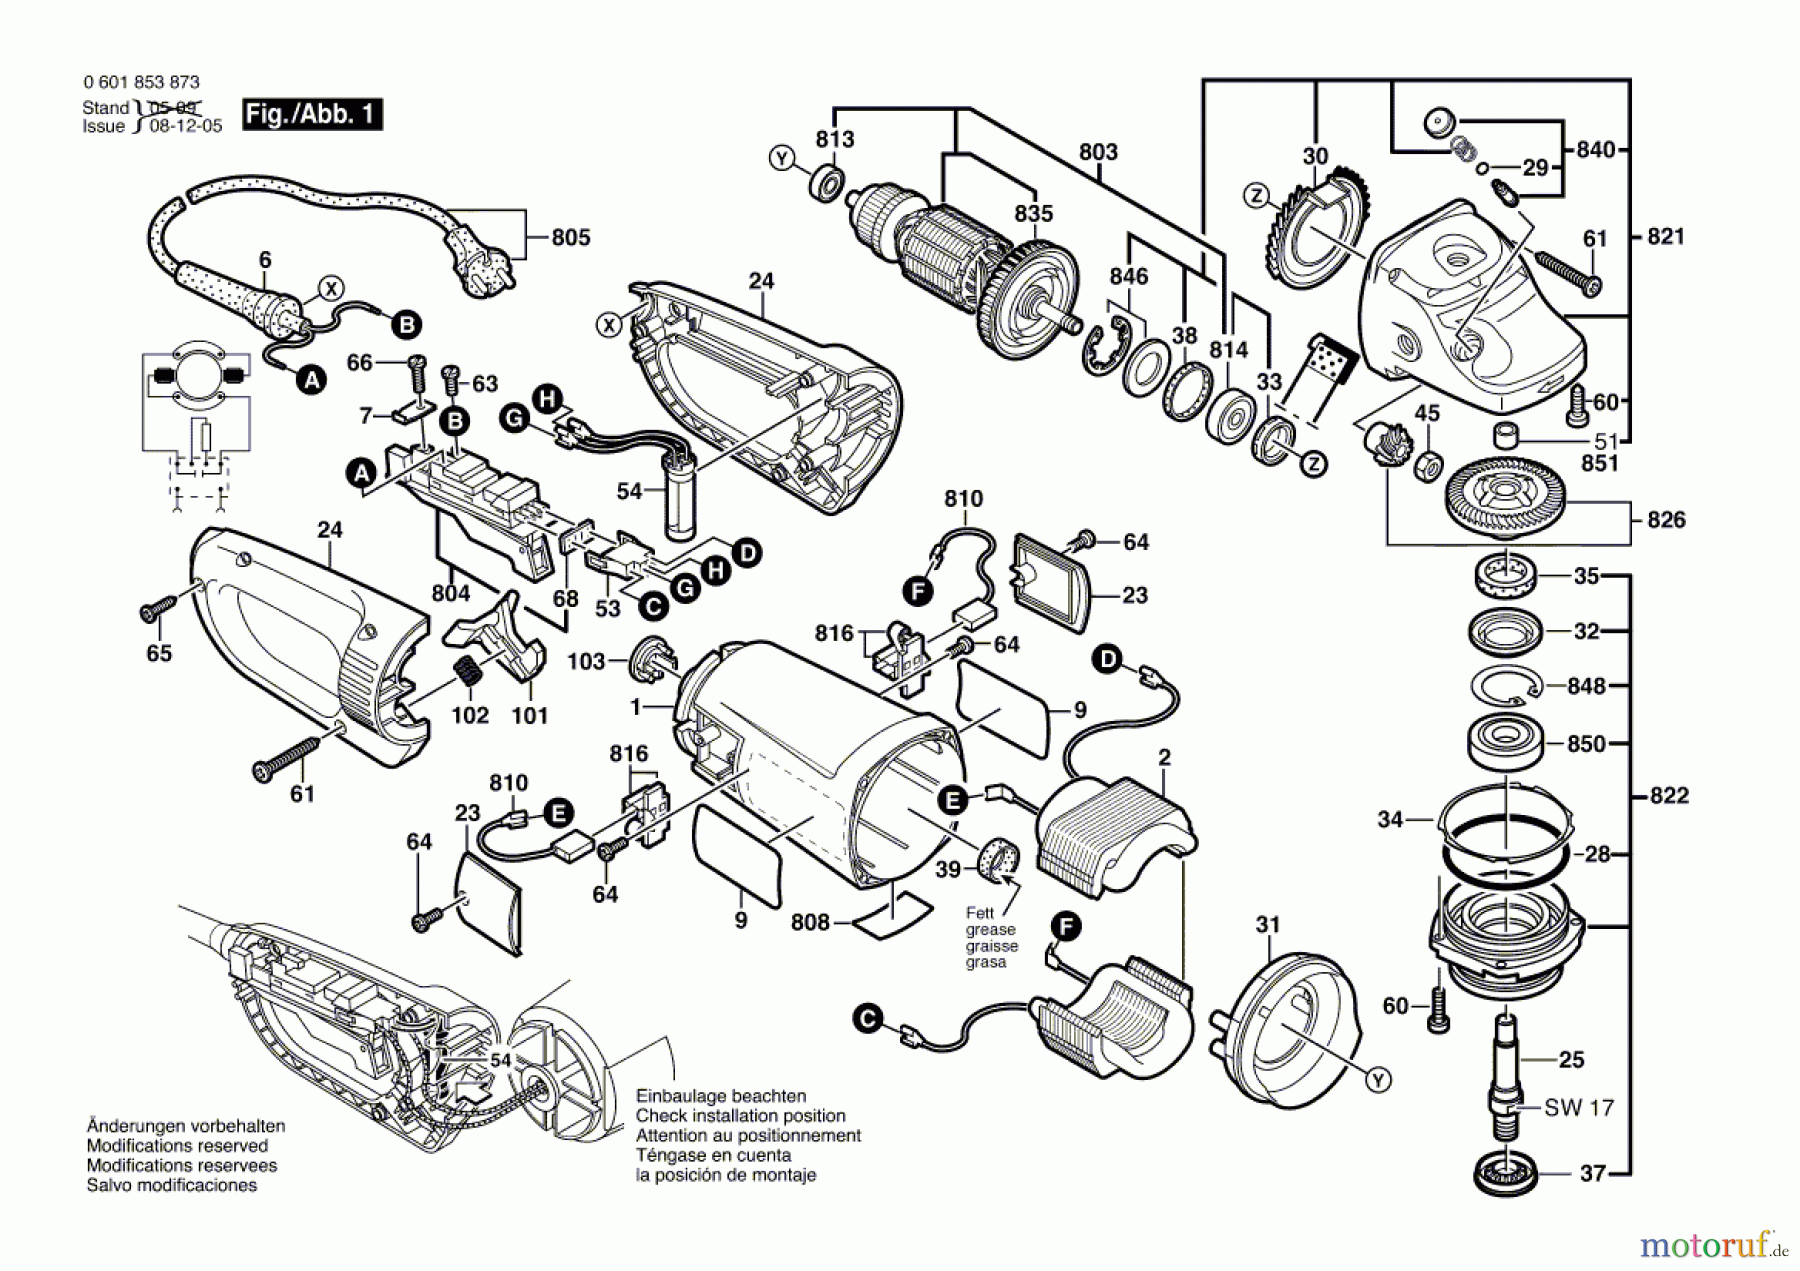  Bosch Werkzeug Winkelschleifer GWS 24-180 JB Seite 1